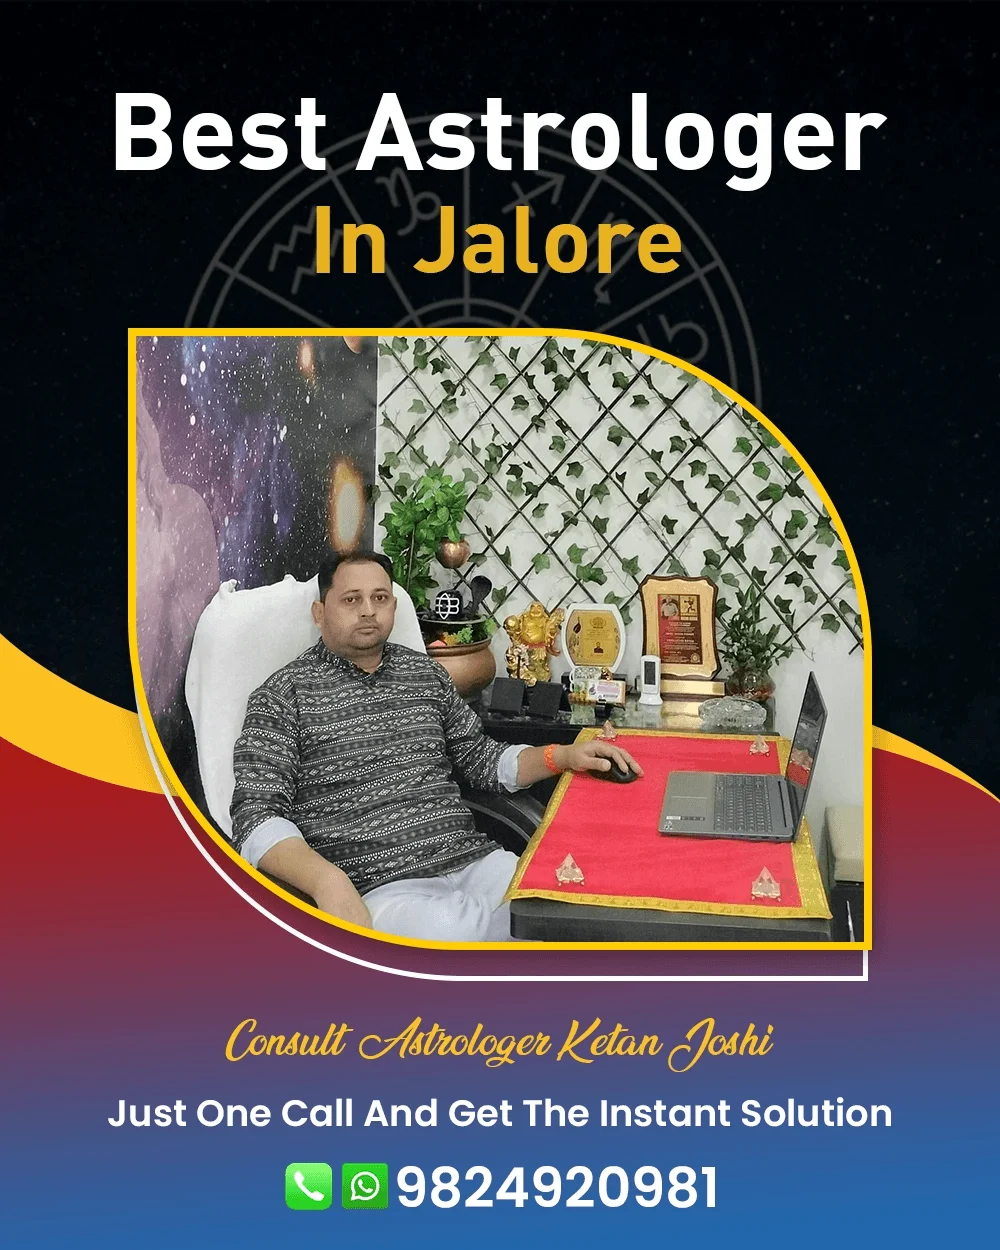 Best Astrologer In Jalore